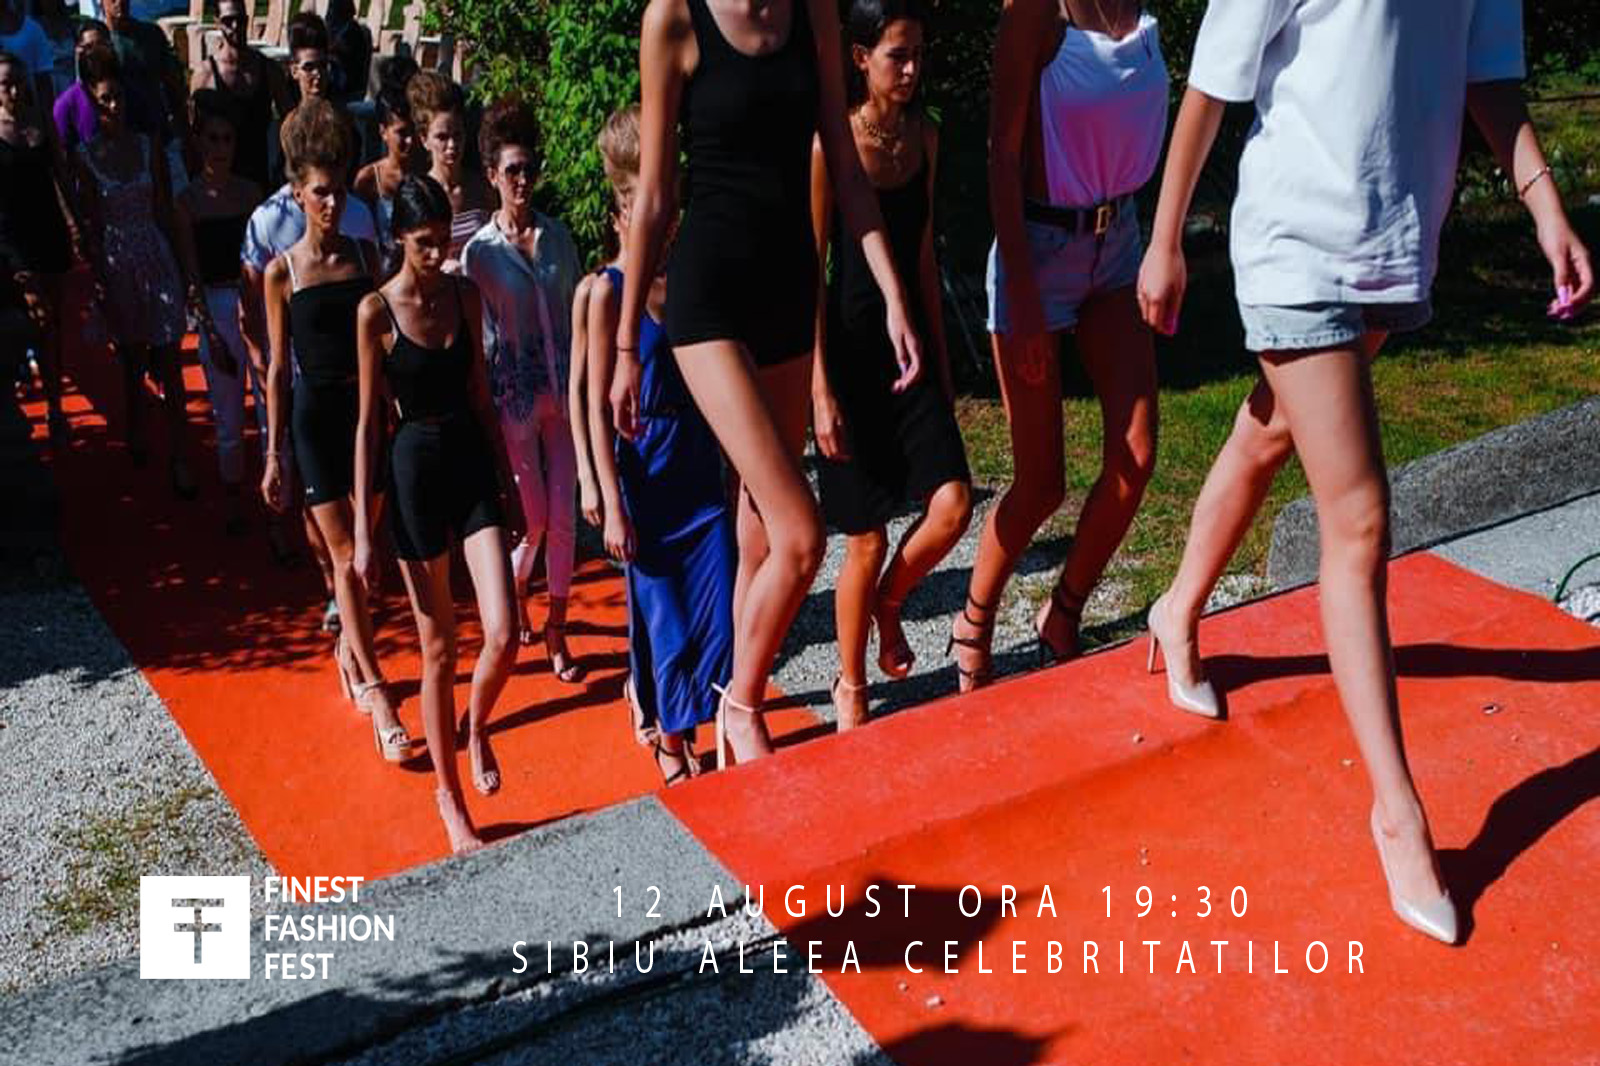 Ne vedem sâmbăta ora 19:30 în Parcul Cetății la Finest Fashion Fest! Invitat special- Cătălin Botezatu